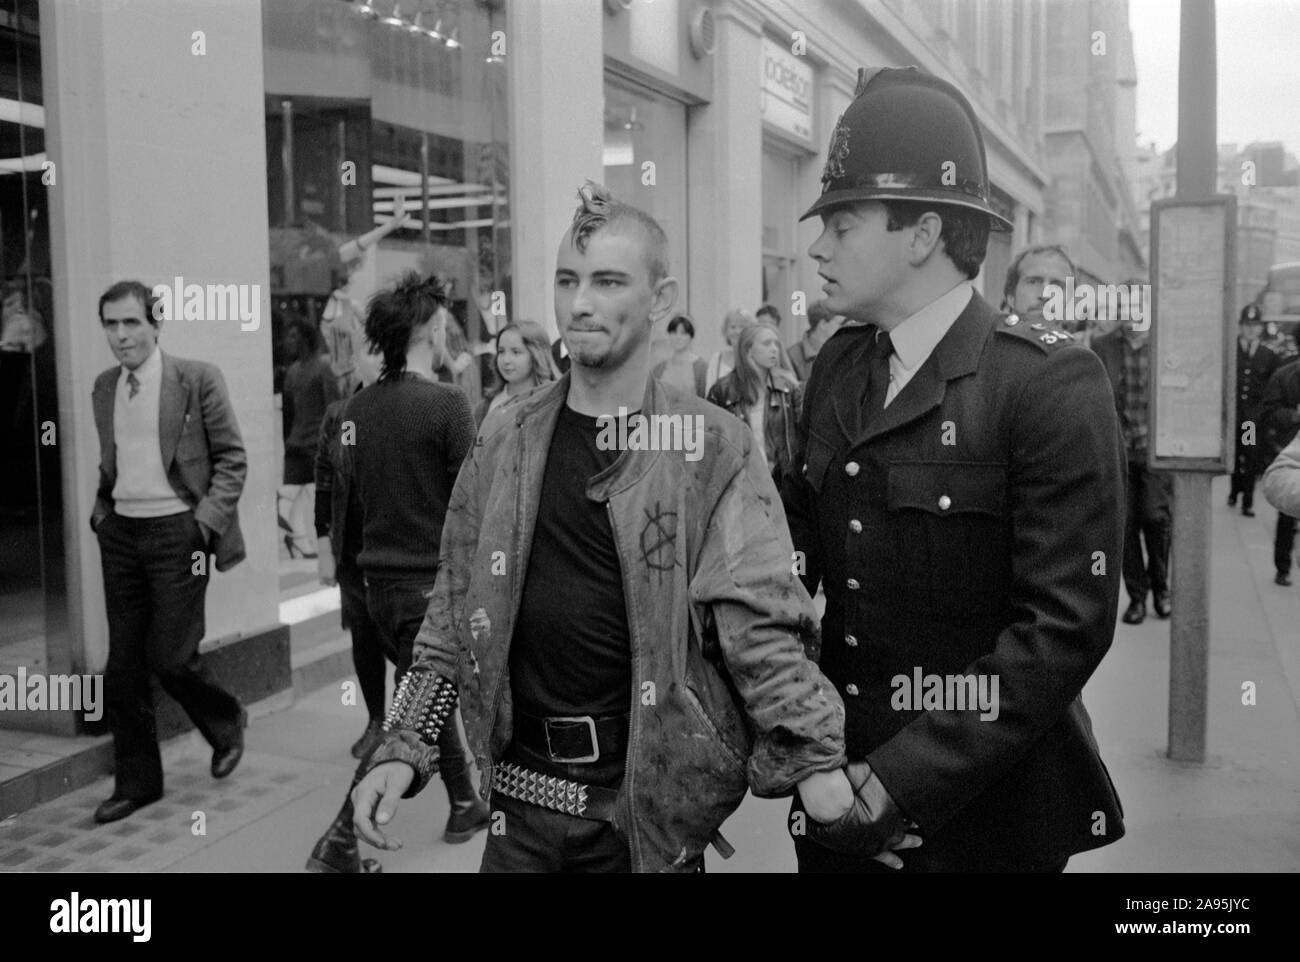 Arresto policial punk manifestante en la primera parada en la ciudad de Londres, Reino Unido el 27 de septiembre de 1984 demostración. Protesta contra el capitalismo en contra de los banqueros de 1980 reclamar la calle protesta. Inglaterra. HOMER SYKES Foto de stock